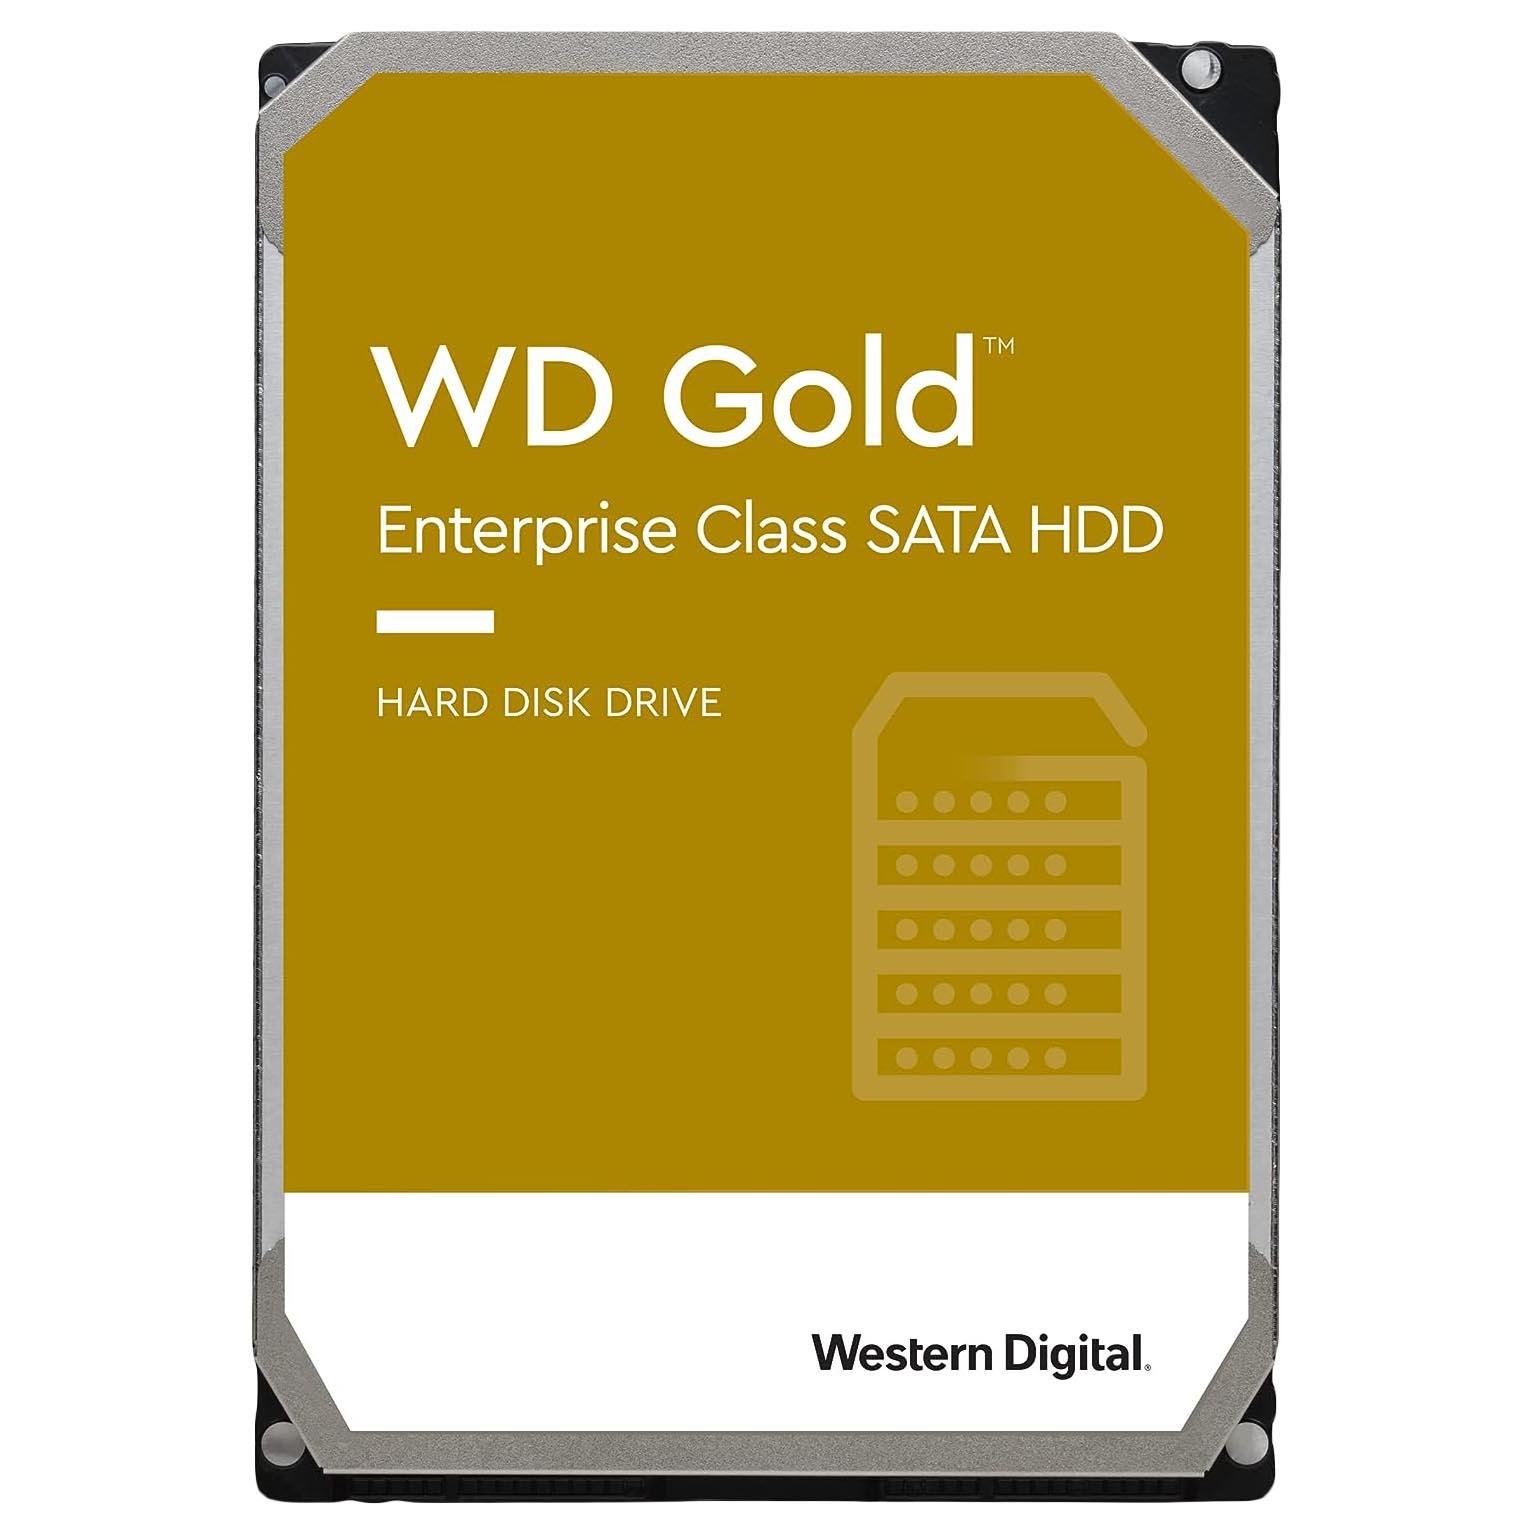 Внутренний жесткий диск Western Digital WD Gold Enterprise Class, WD8004VRYZ, 8Тб внутренний жесткий диск western digital wd red pro nas wd8003ffbx 8тб